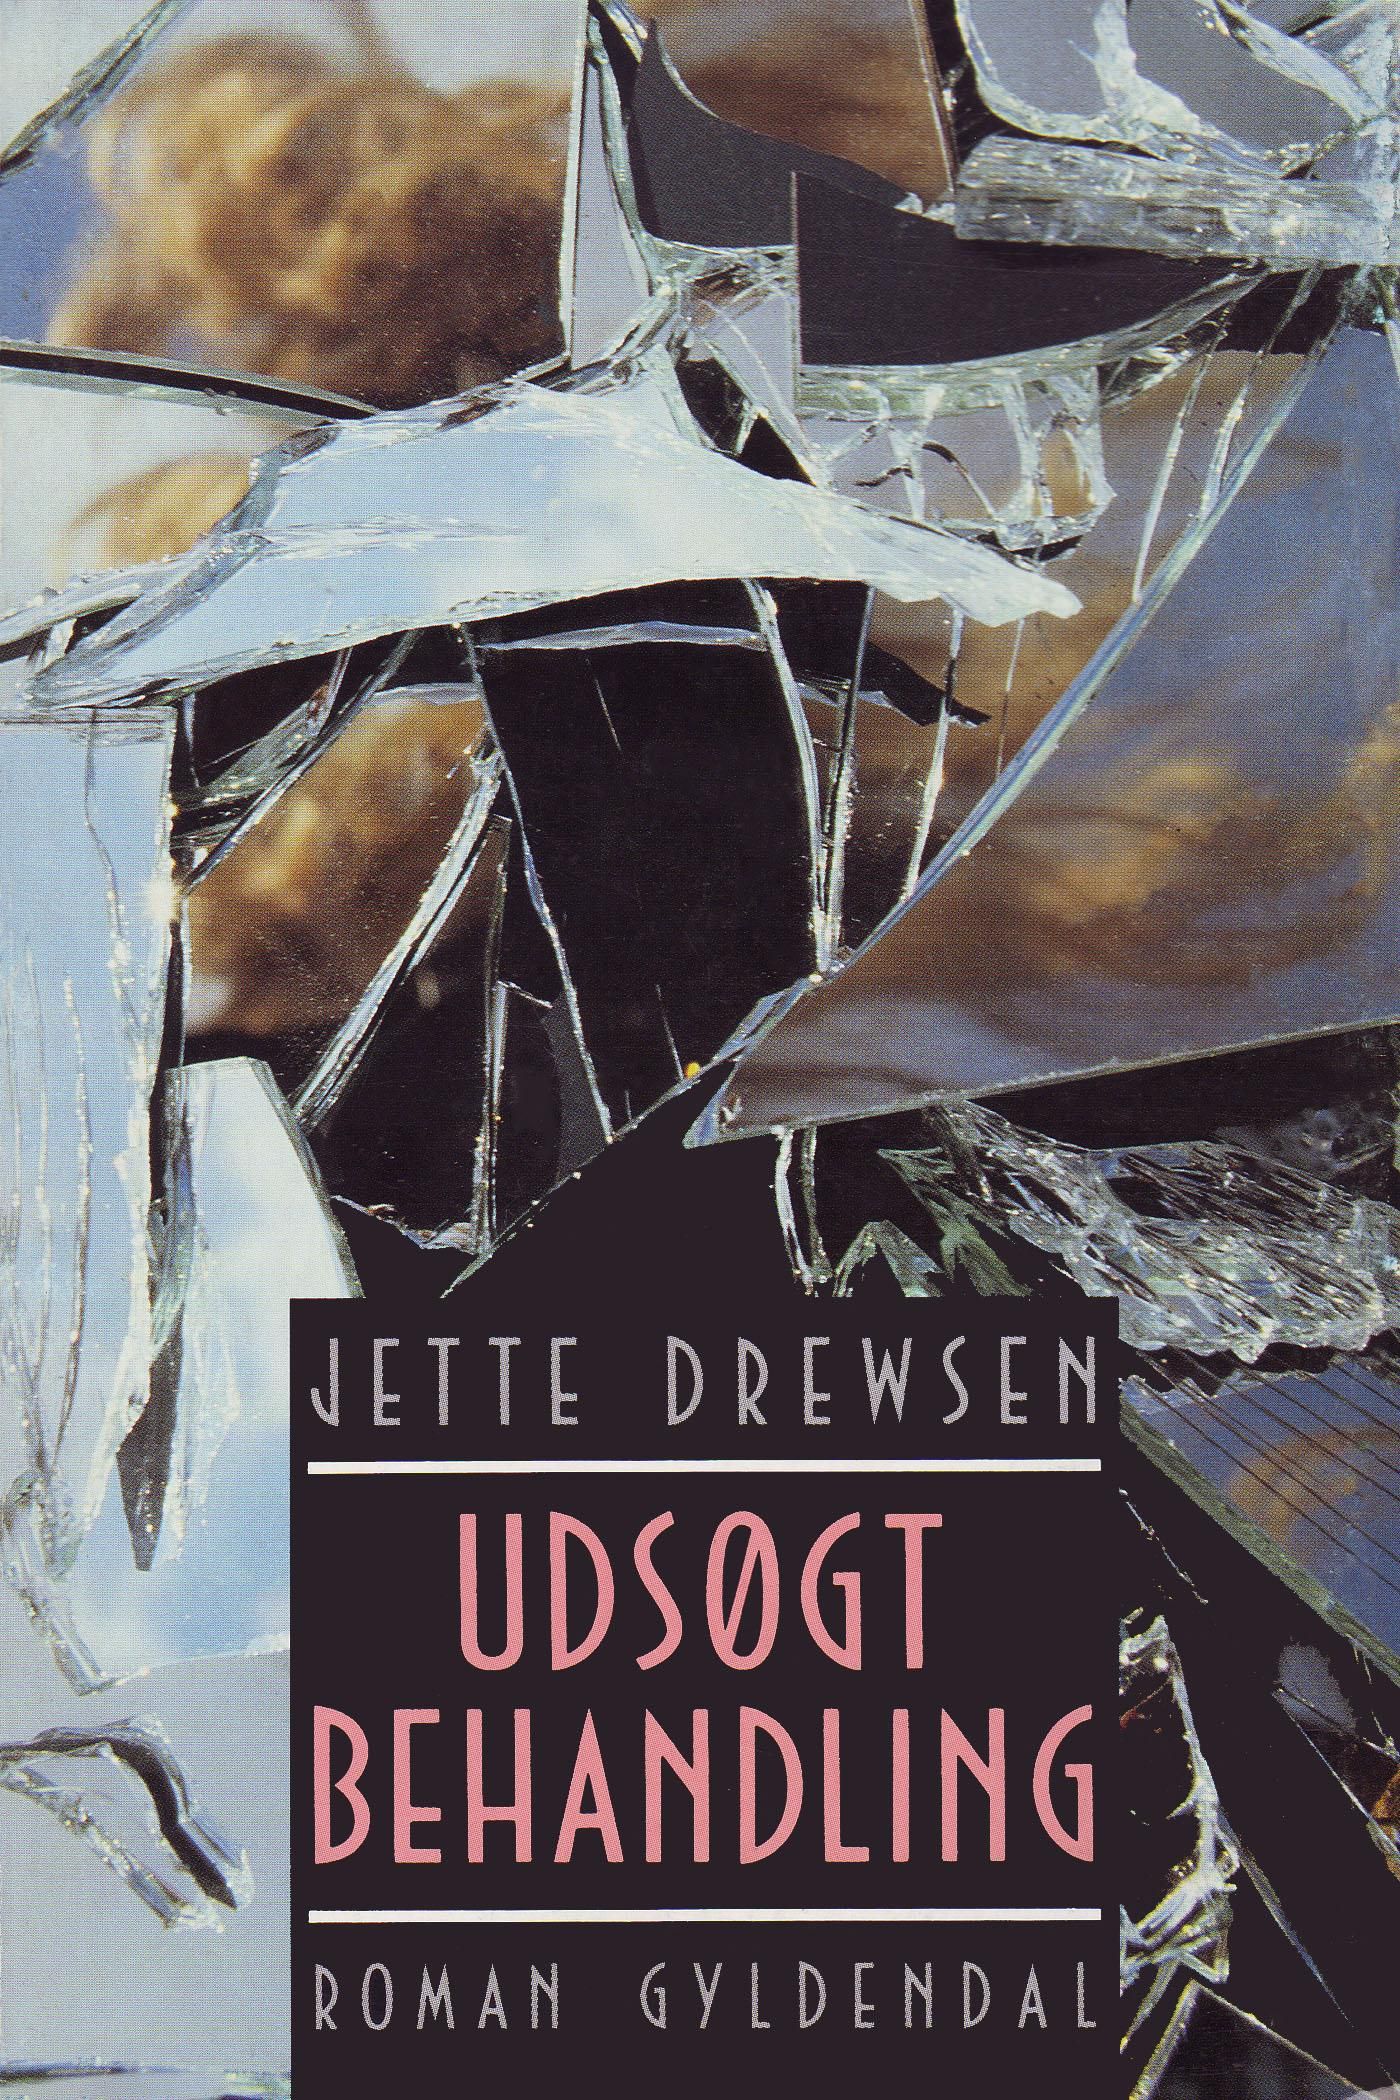 Udsøgt behandling, eBook by Jette Drewsen